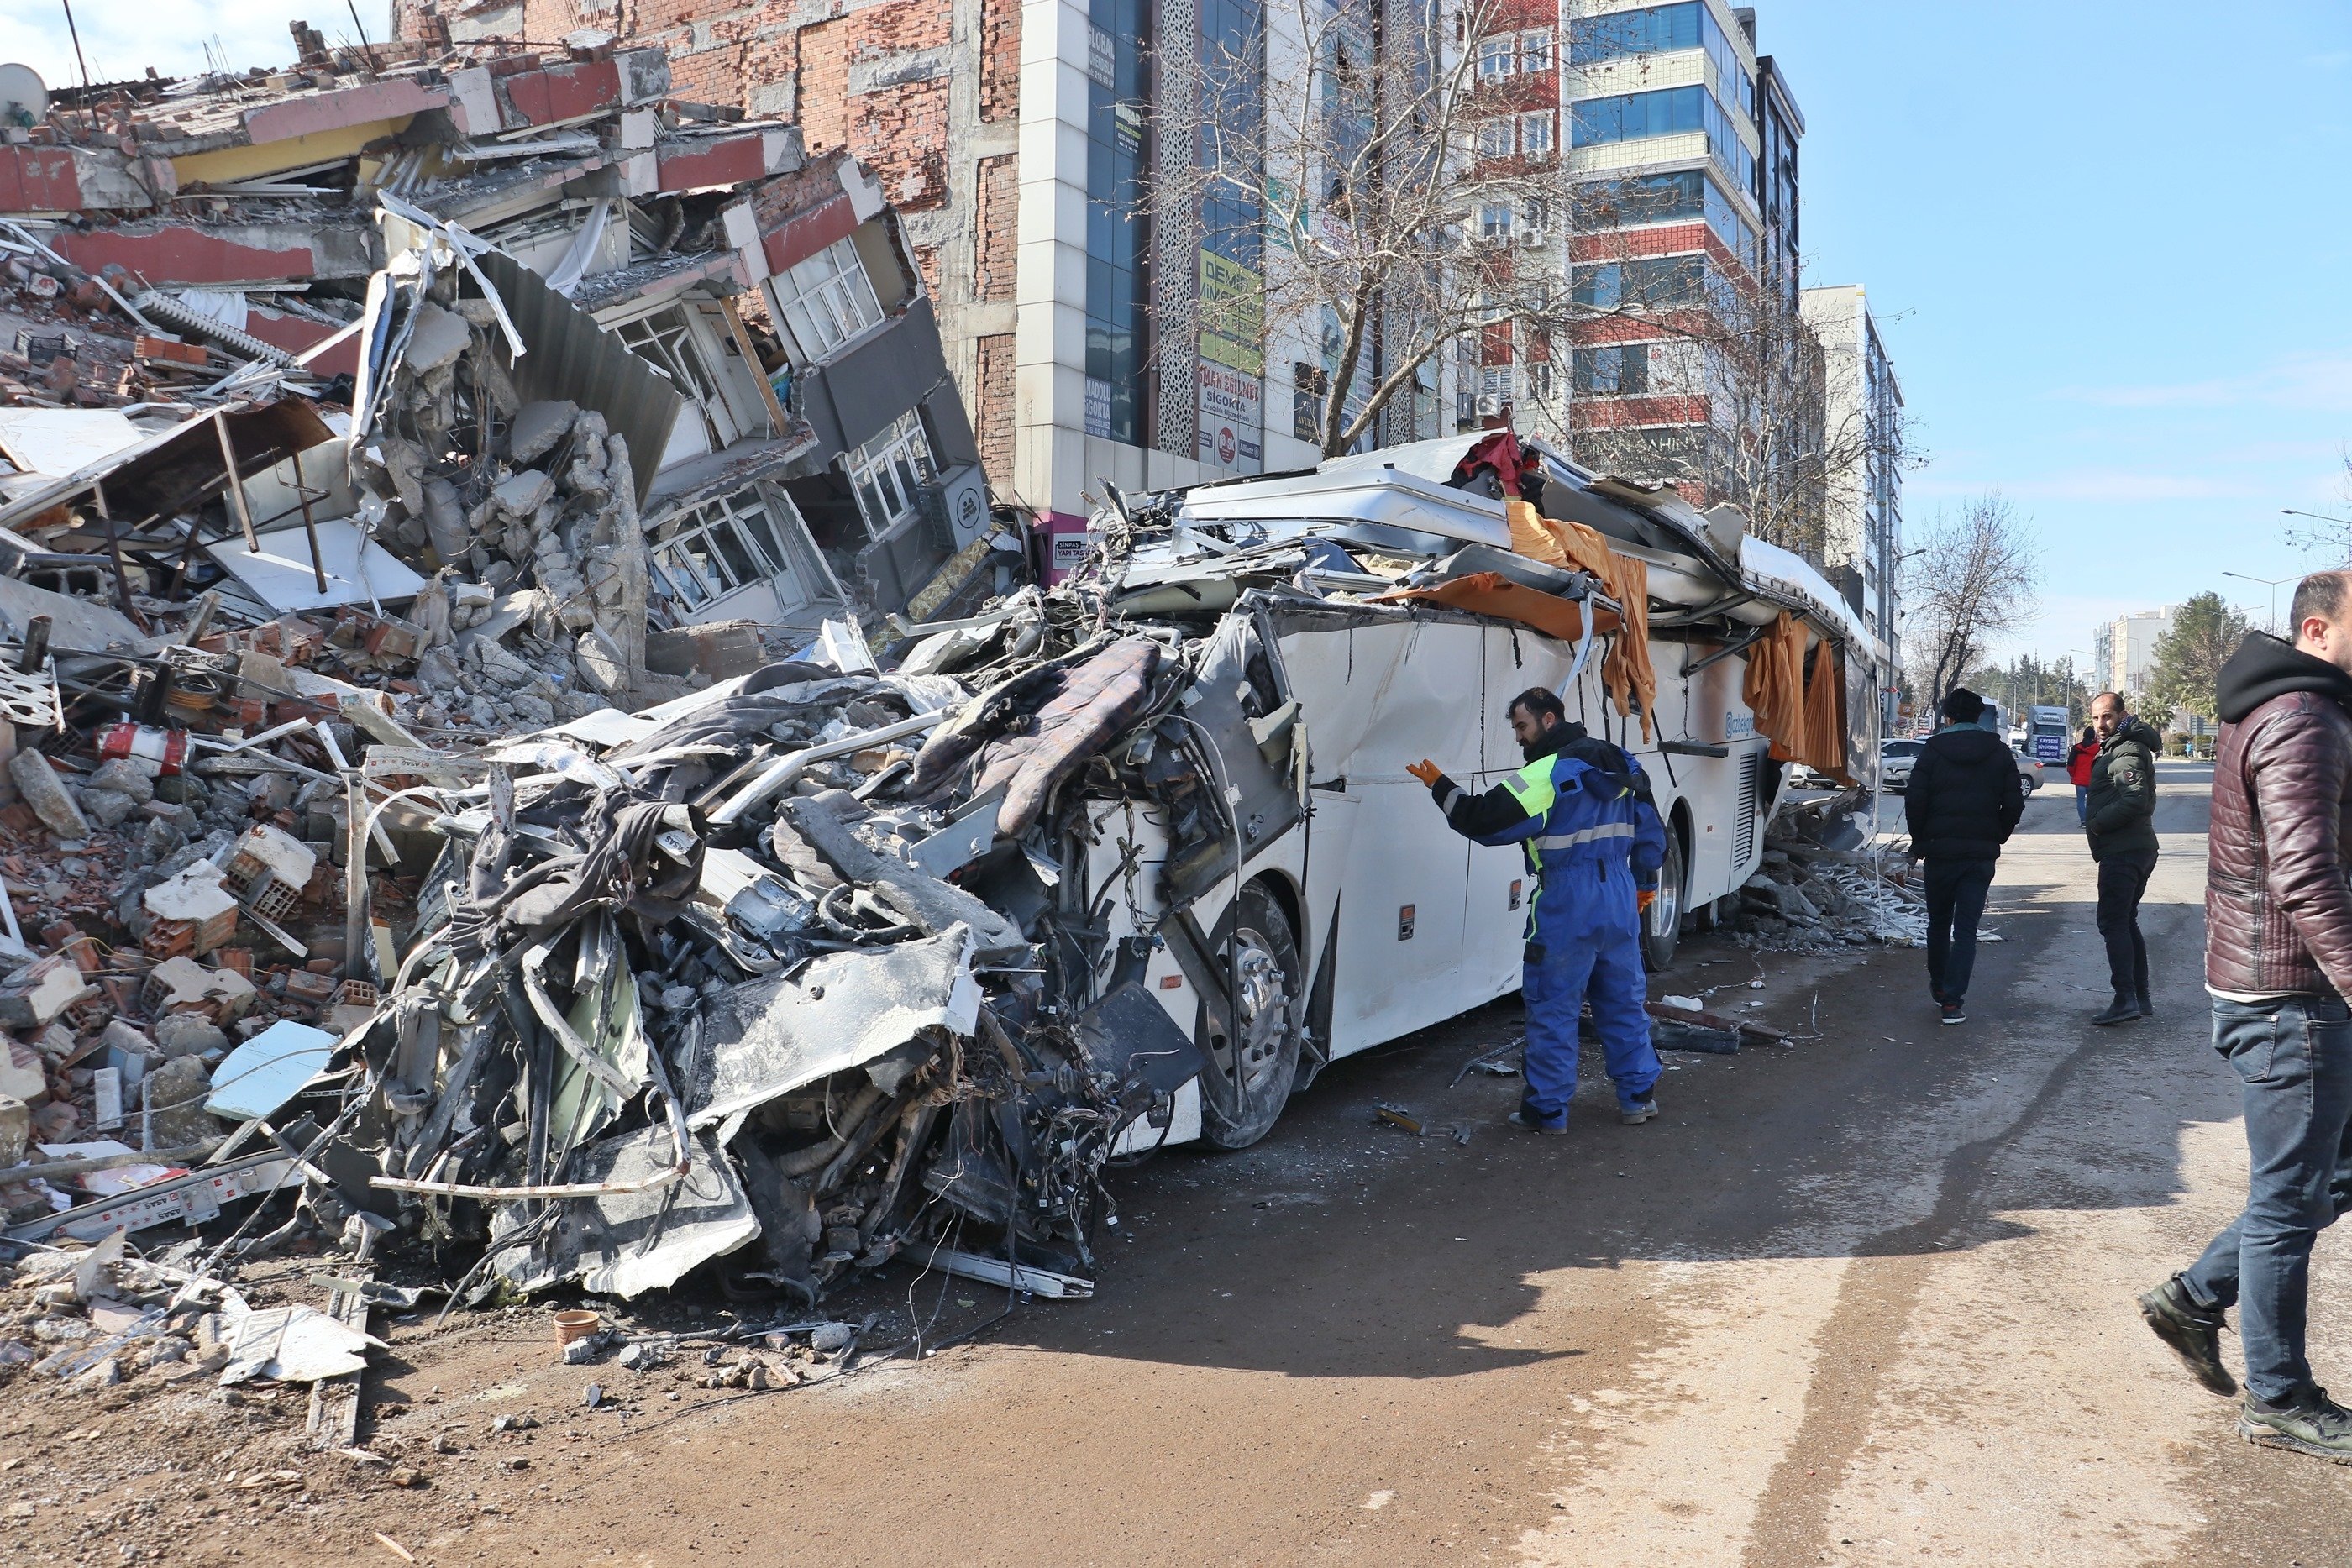 Reruntuhan bus hancur di luar hotel İsias setelah gempa bumi Kahramanmaraş, Adıyaman, Türkiye, 9 Februari 2023. (Foto DHA)